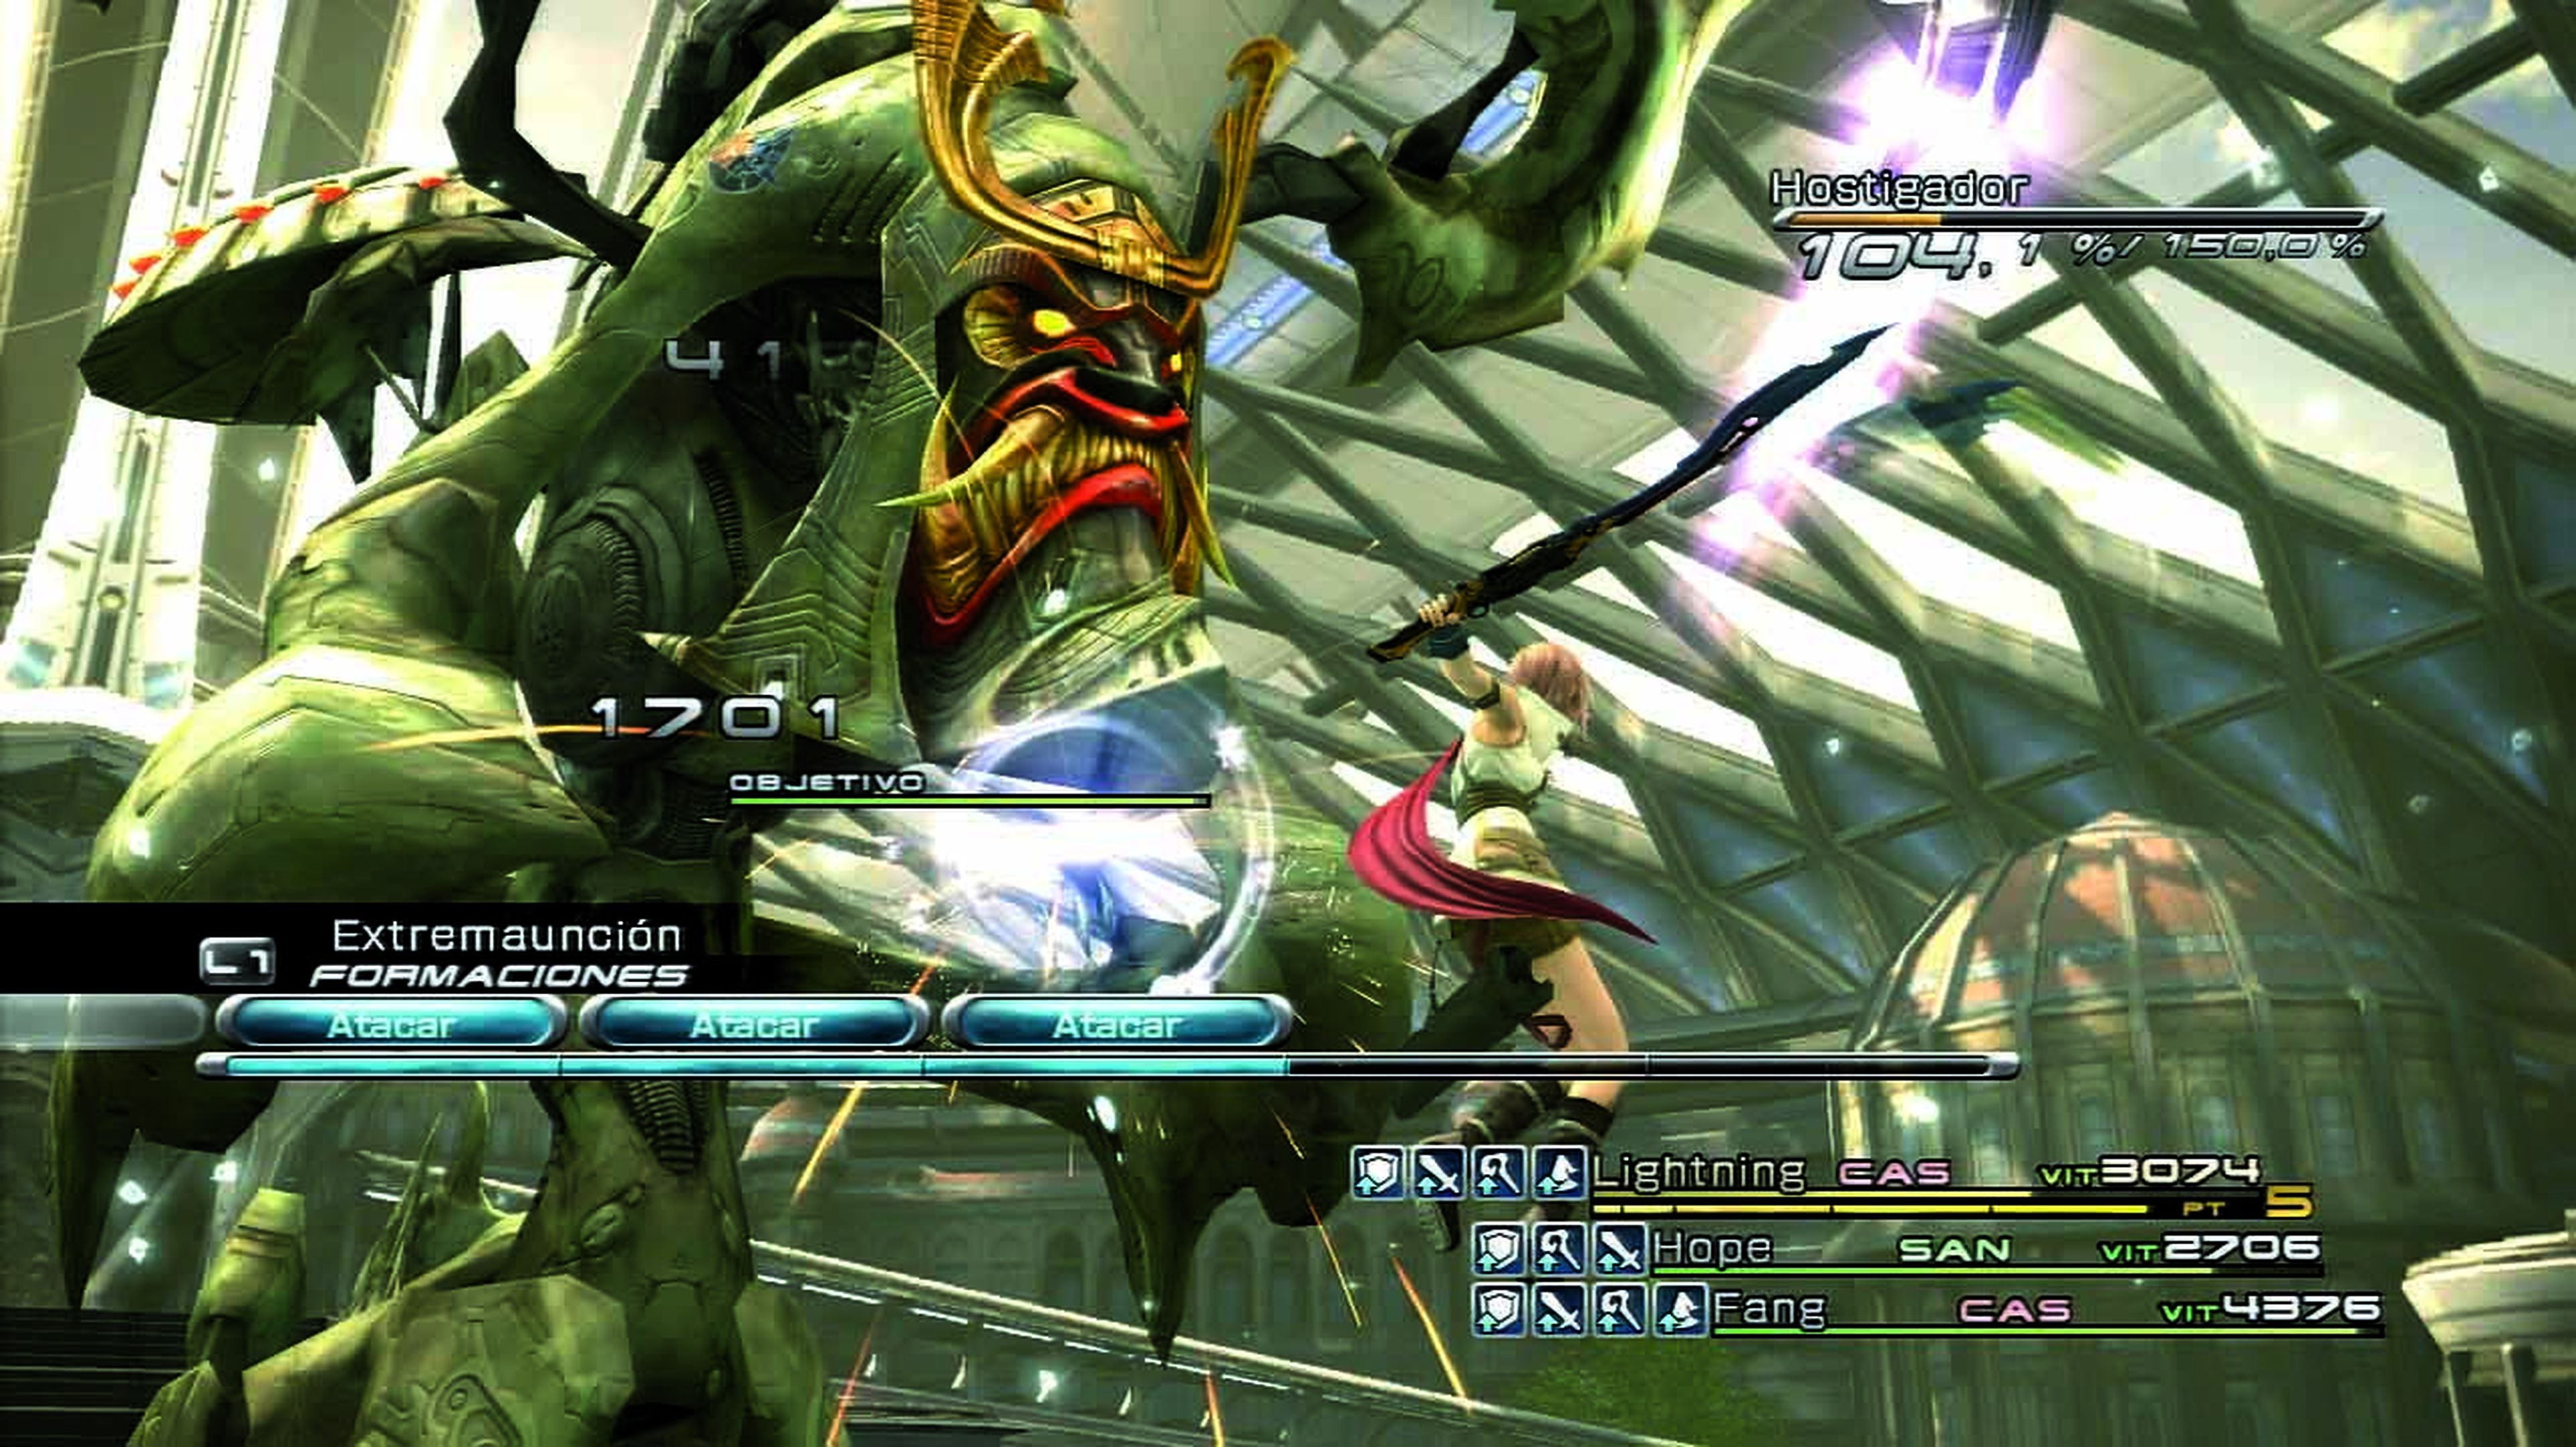 Un apoteósico Final Fantasy XIII en PS3